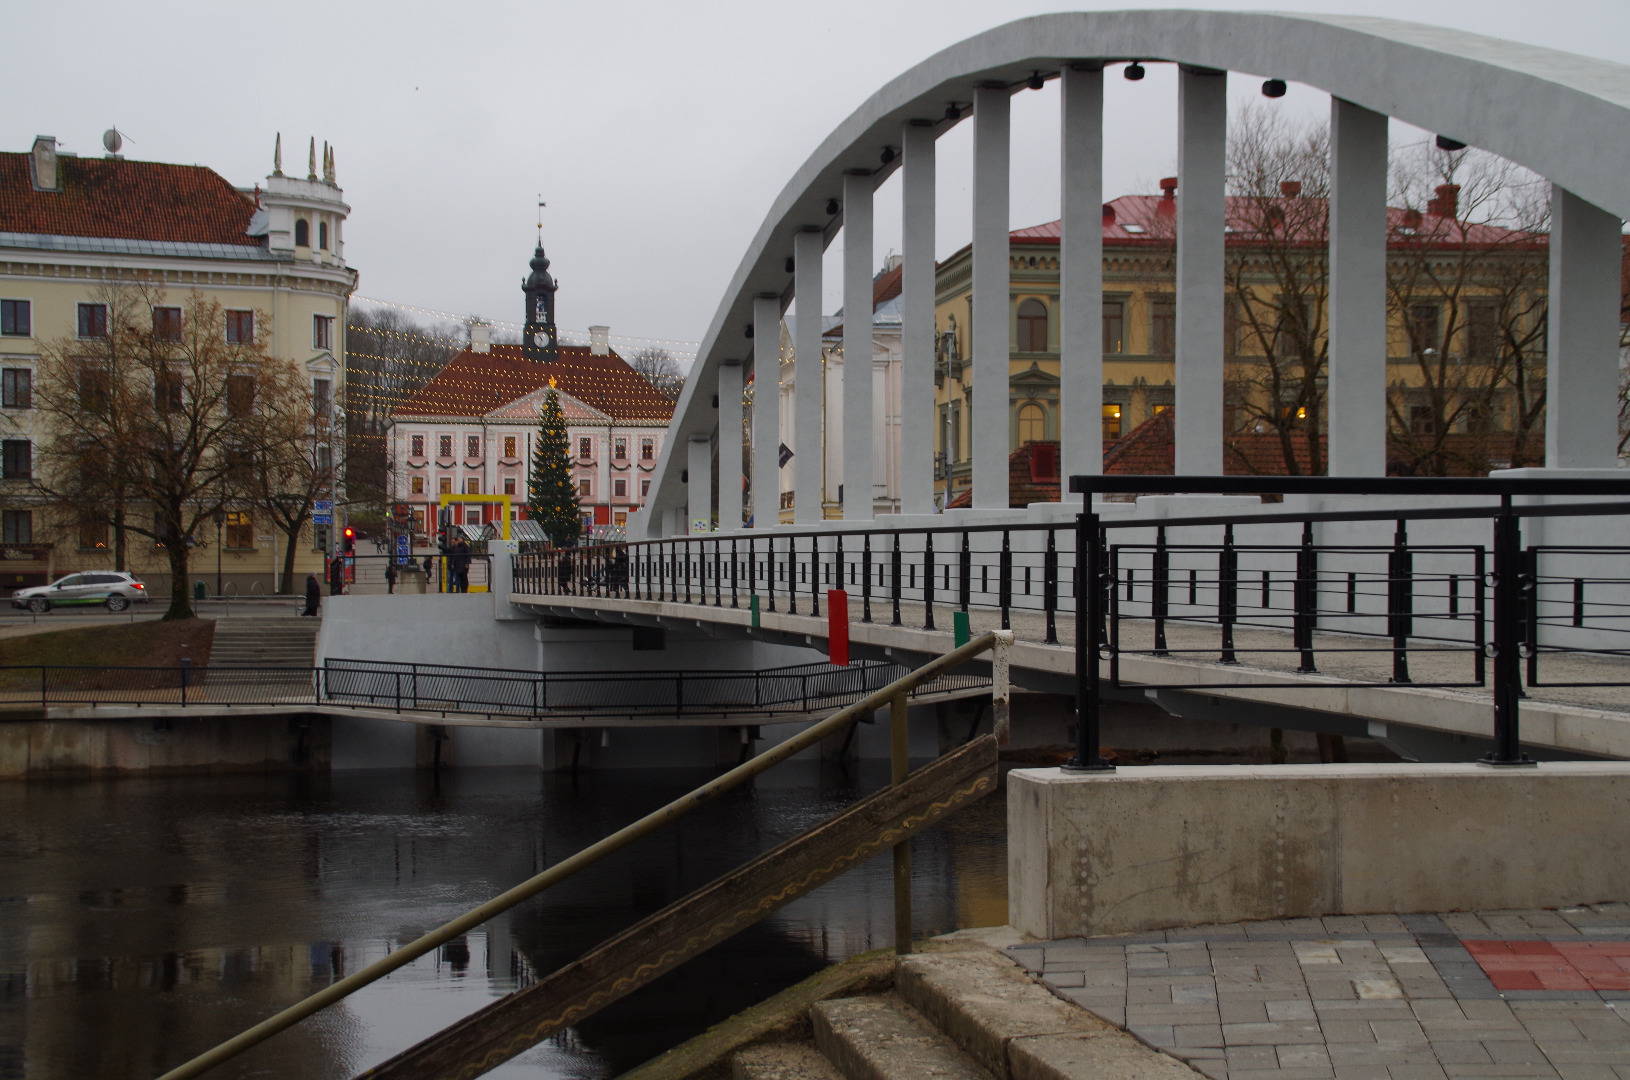 Estonia : Tartu stone sild = the stone bridge rephoto